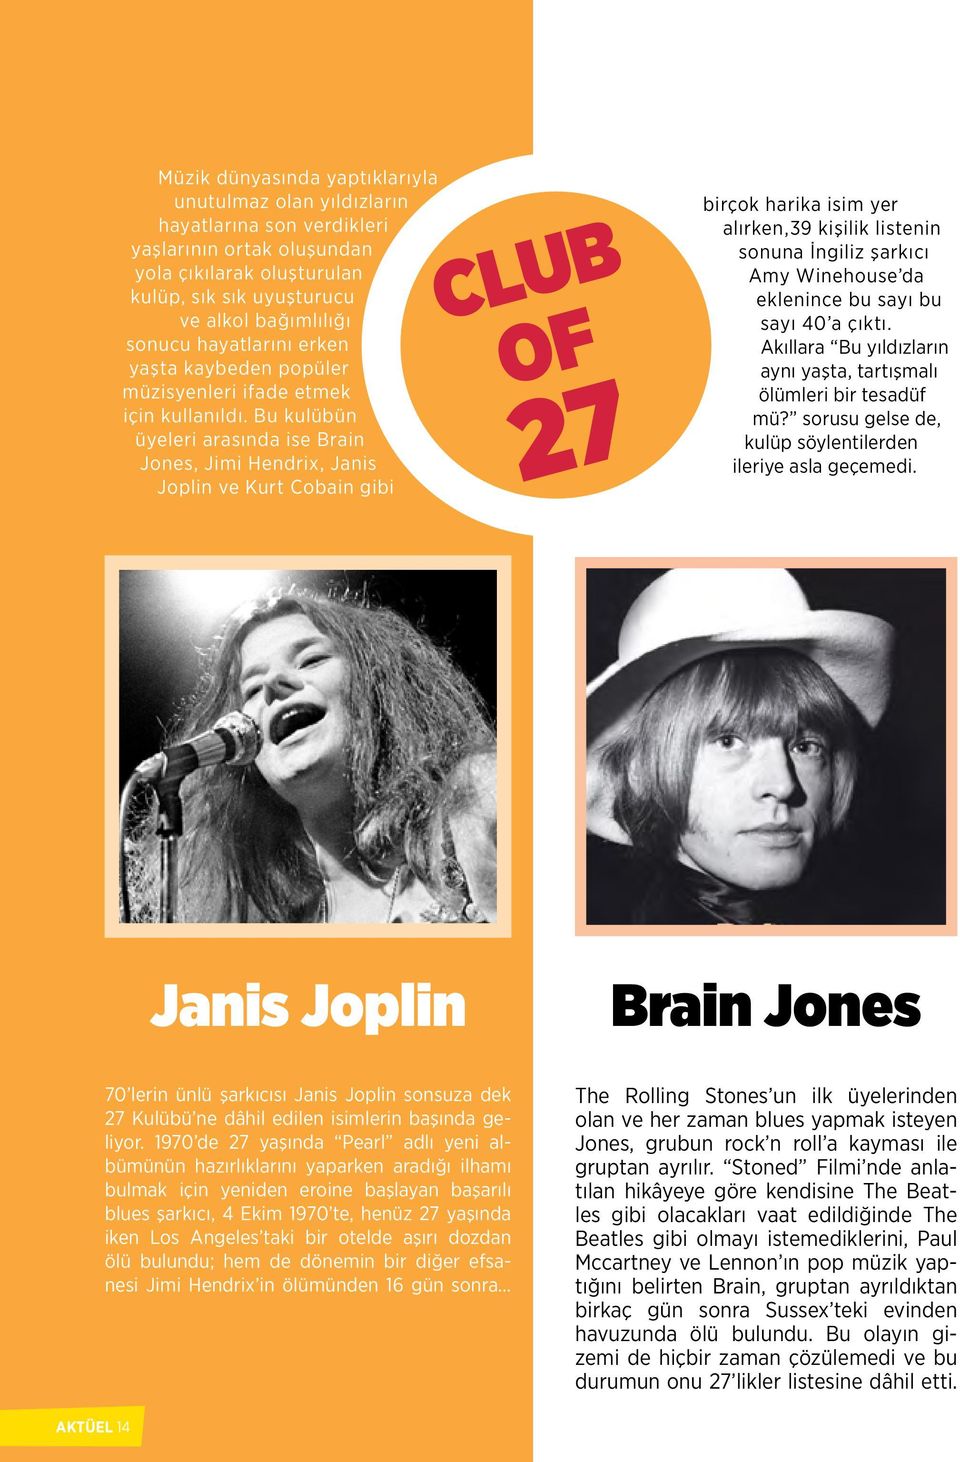 Bu kulübün üyeleri arasında ise Brain Jones, Jimi Hendrix, Janis Joplin ve Kurt Cobain gibi CLUB OF 27 birçok harika isim yer alırken,39 kişilik listenin sonuna İngiliz şarkıcı Amy Winehouse da